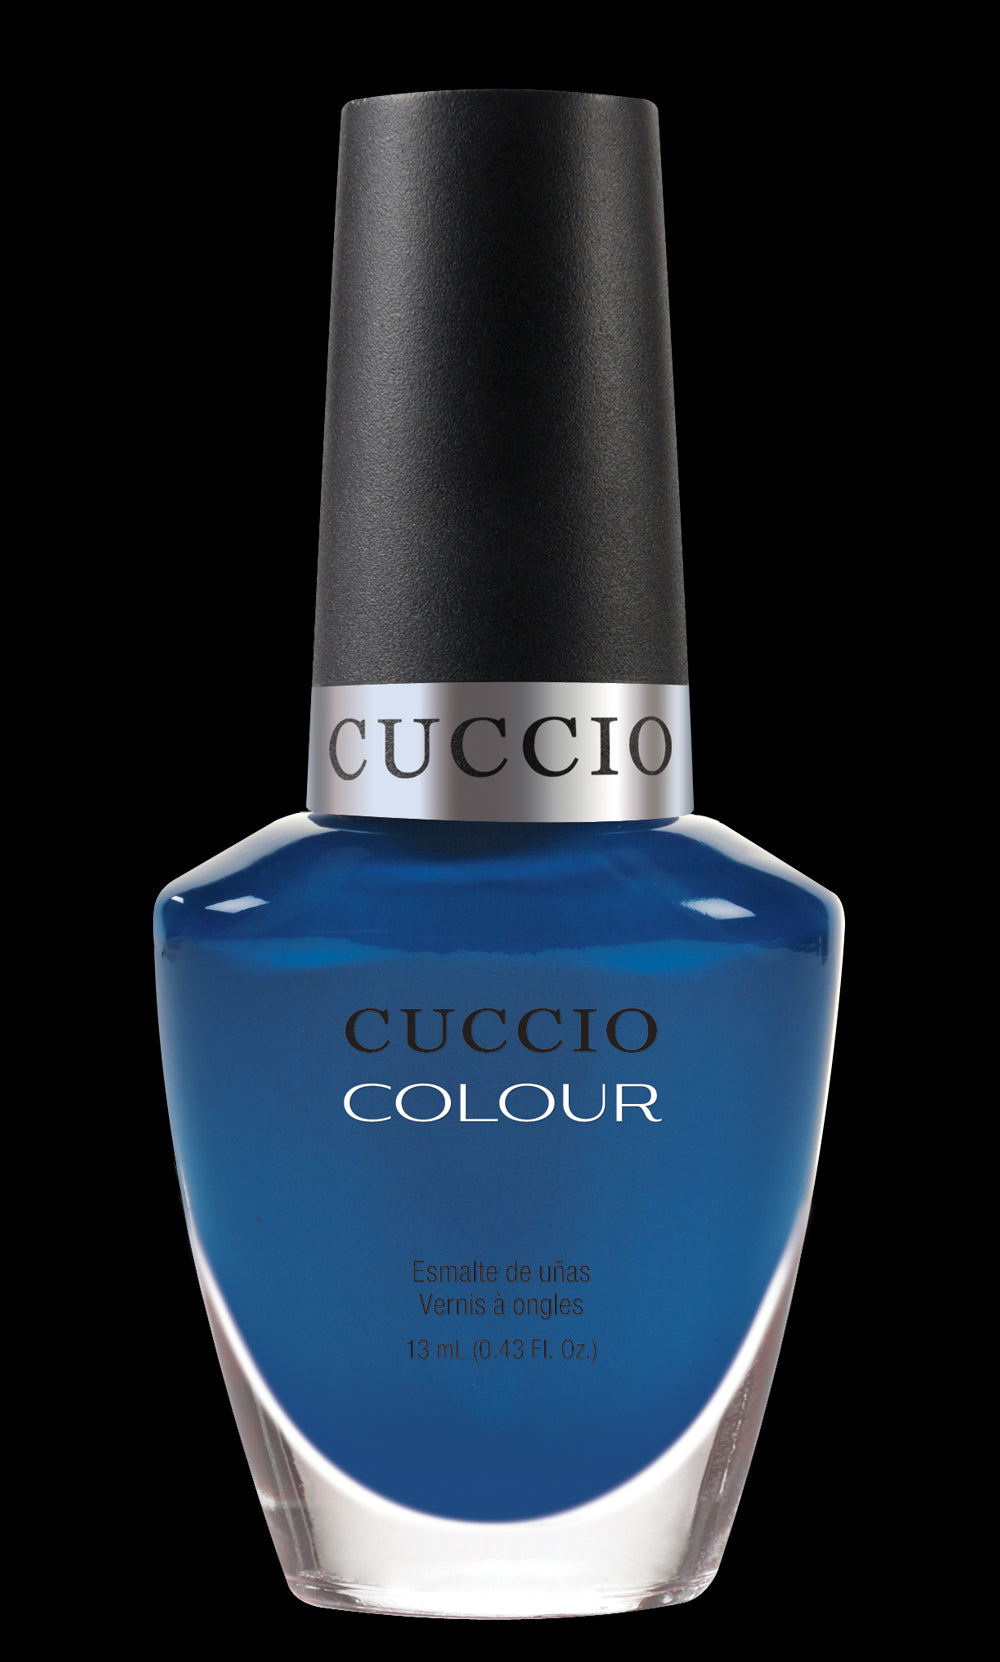 Cuccio Colour Got The Navy Blues